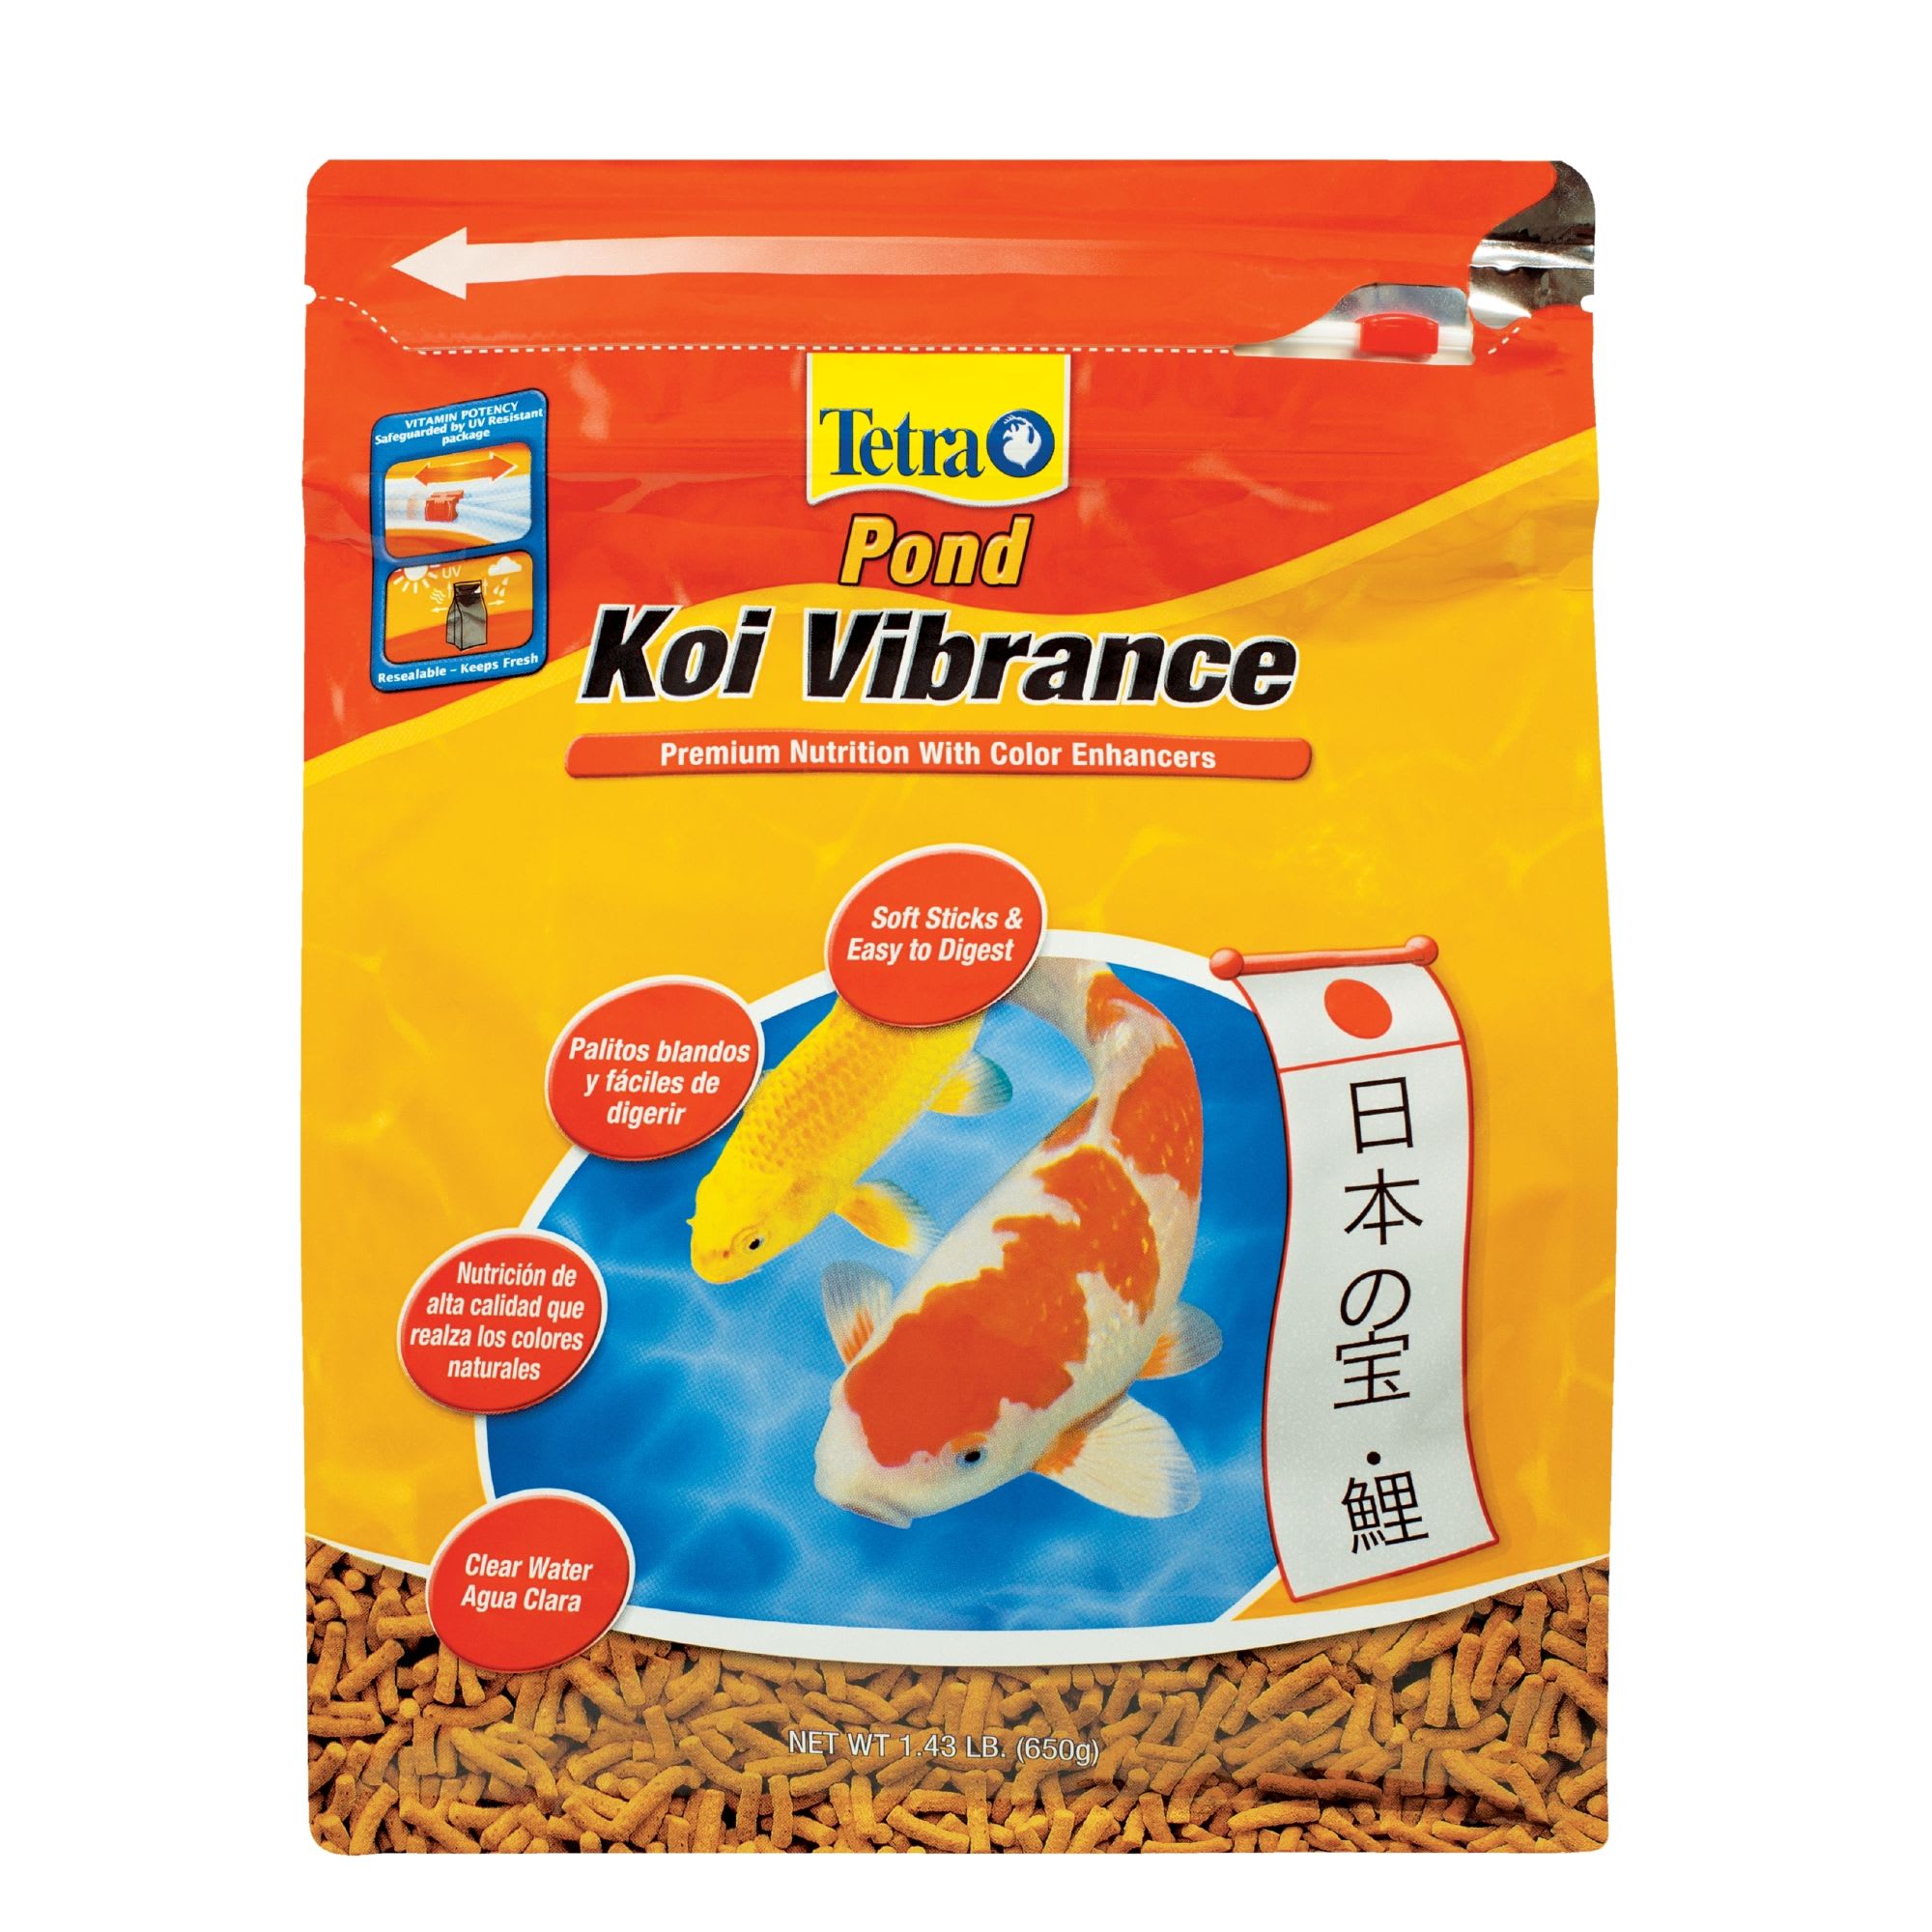 Tetra Koi Vibrance 3.31 lbs. 10 liter bucket - Best Prices on